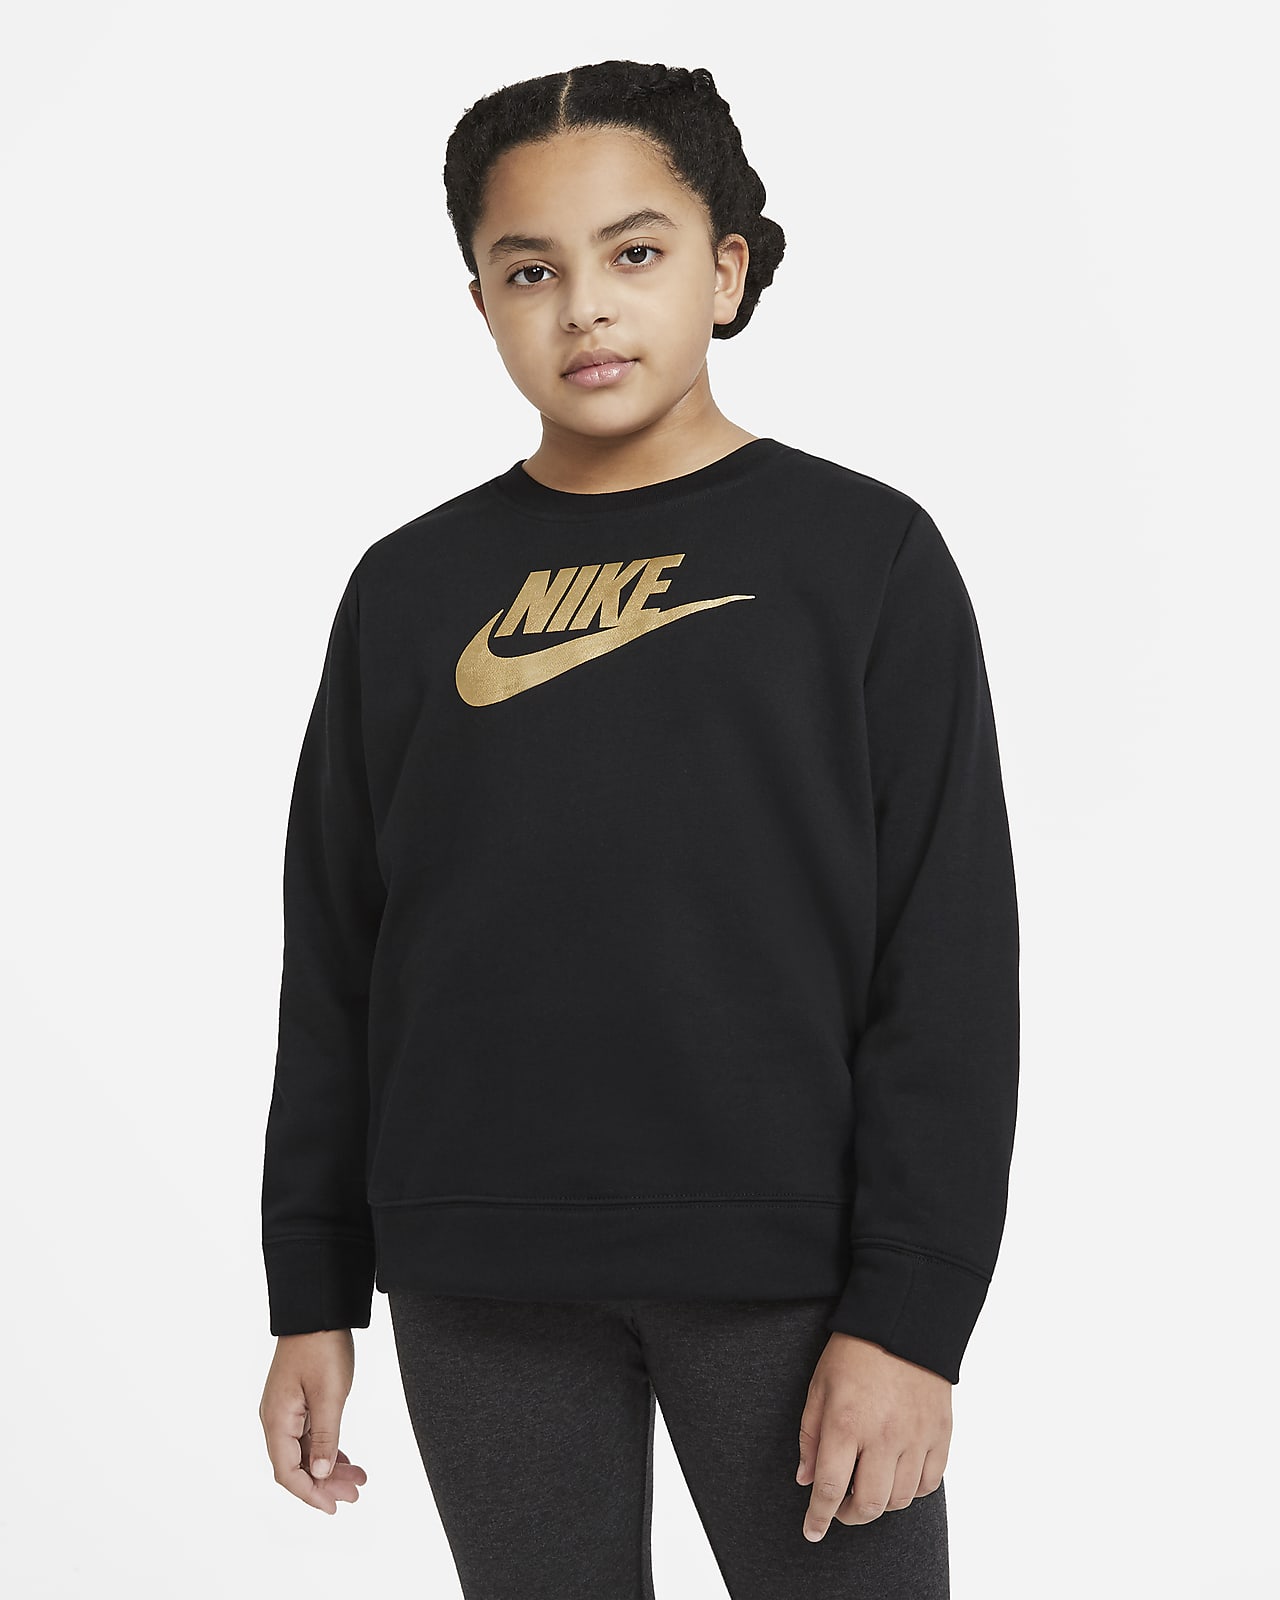 Nike Sportswear Older Kids' (Girls') Crew (Extended Size)